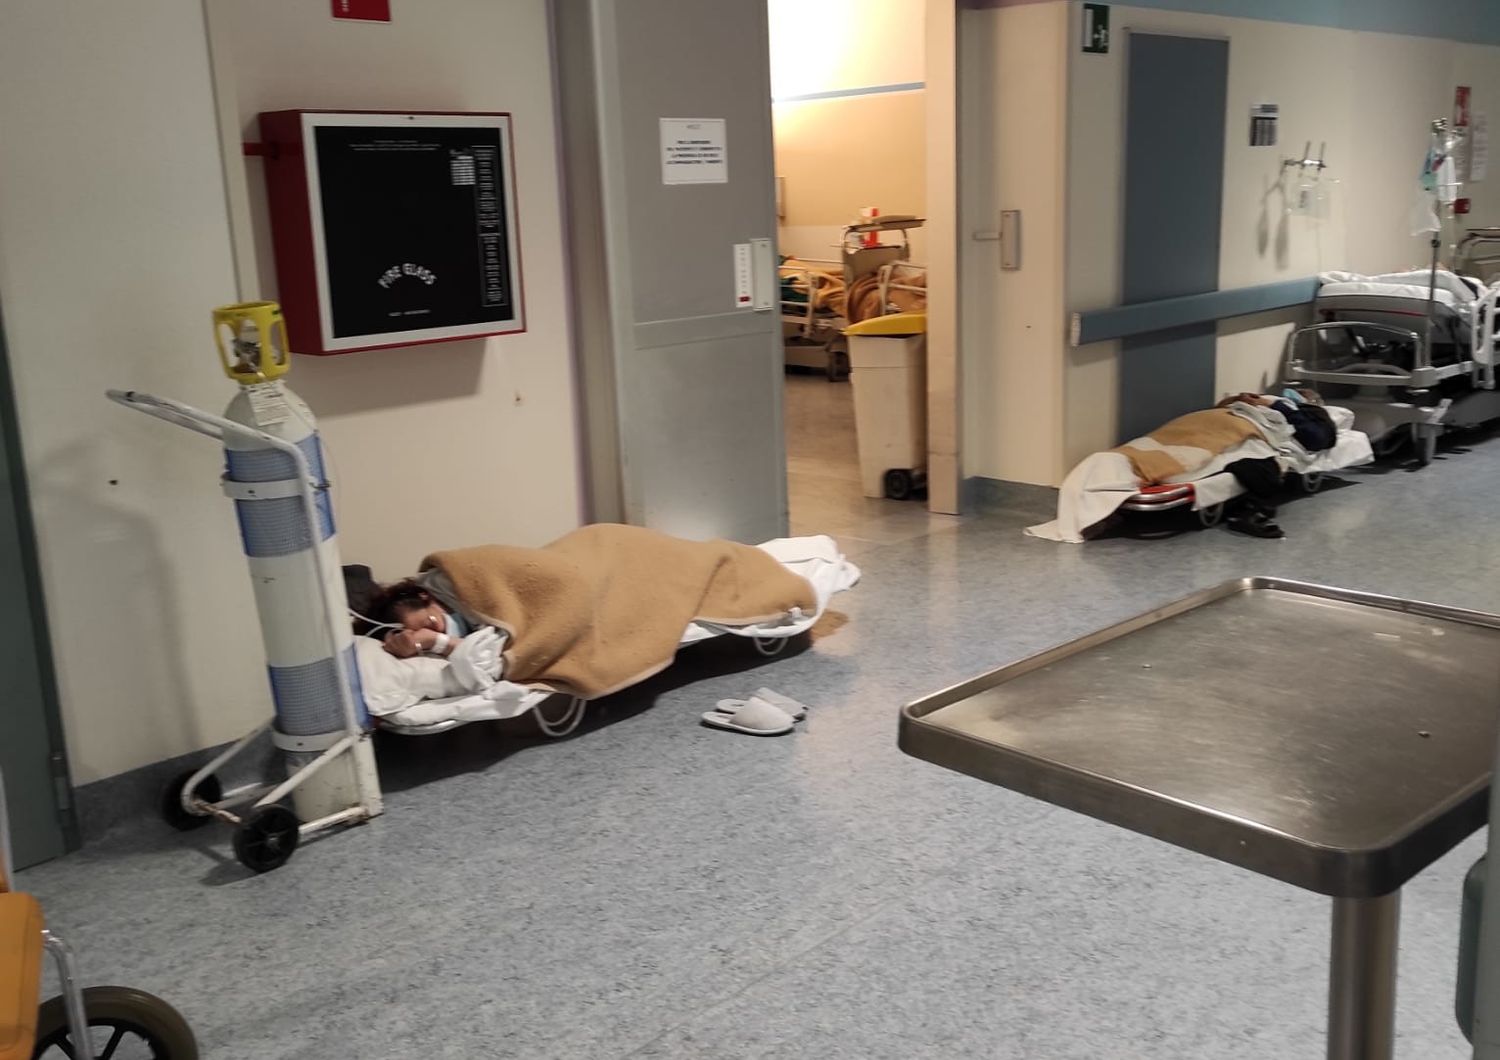 pazienti sulle barelle a terra negli ospedali